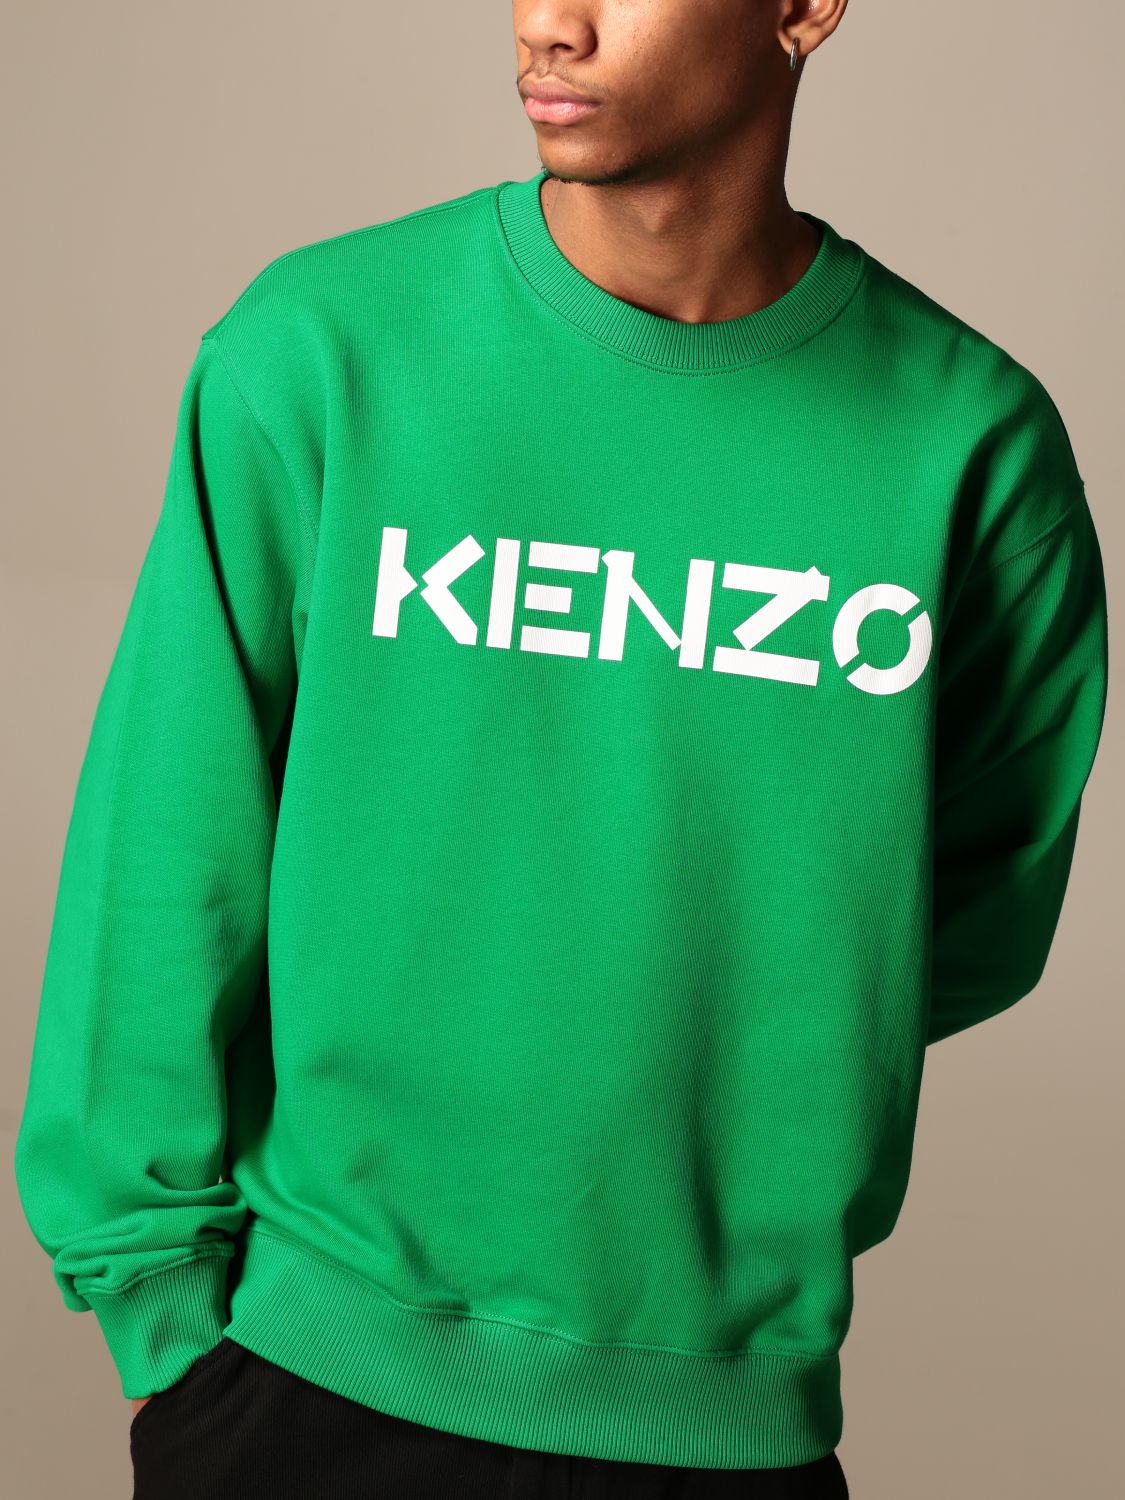 kenzo shirt green